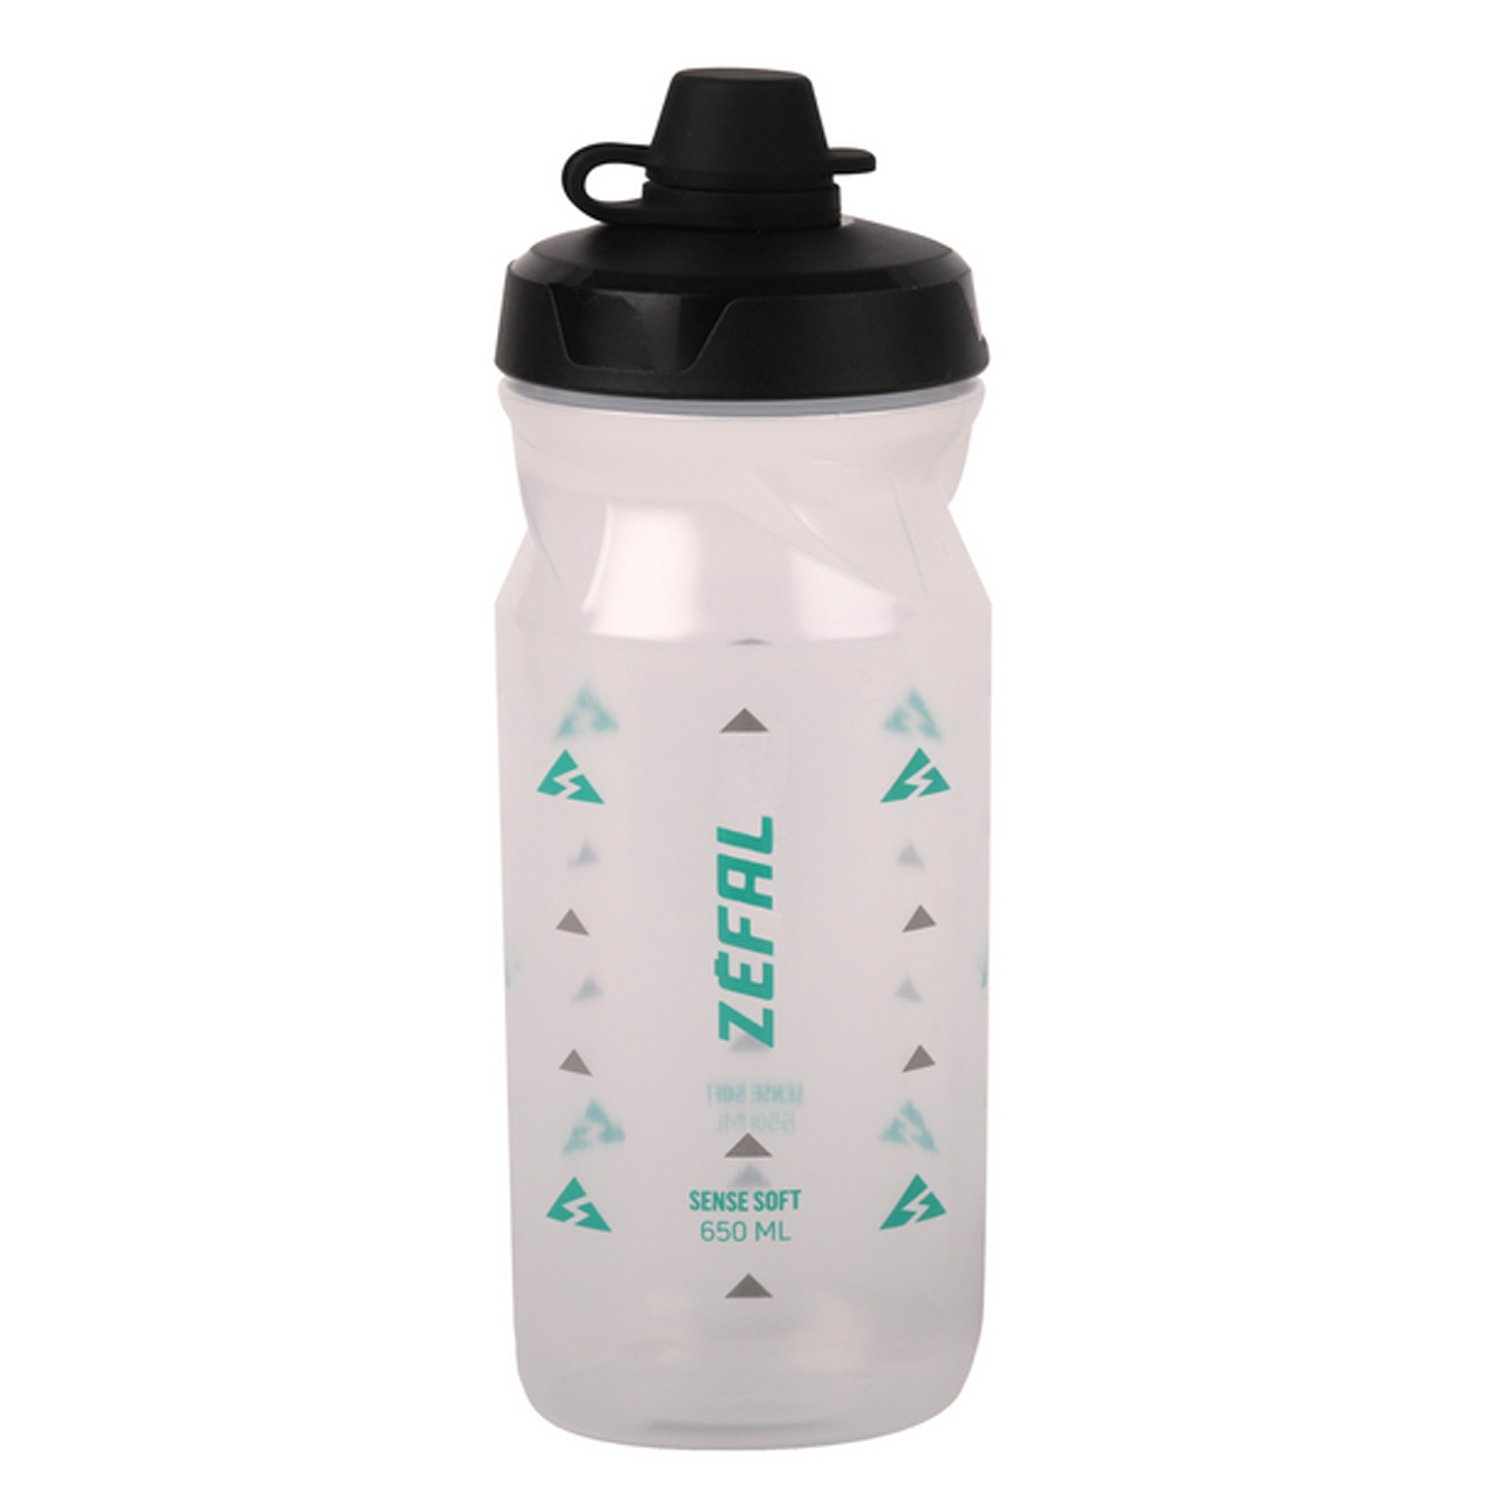 Фляга велосипедная Zefal Sense Soft 65 No-Mud Bottle Translucent, пластик, 650 мл, зеленый/серый, 2023, 155Q фляга велосипедная oxford water bottle hydra пластик 700 мл 2023 bt152b